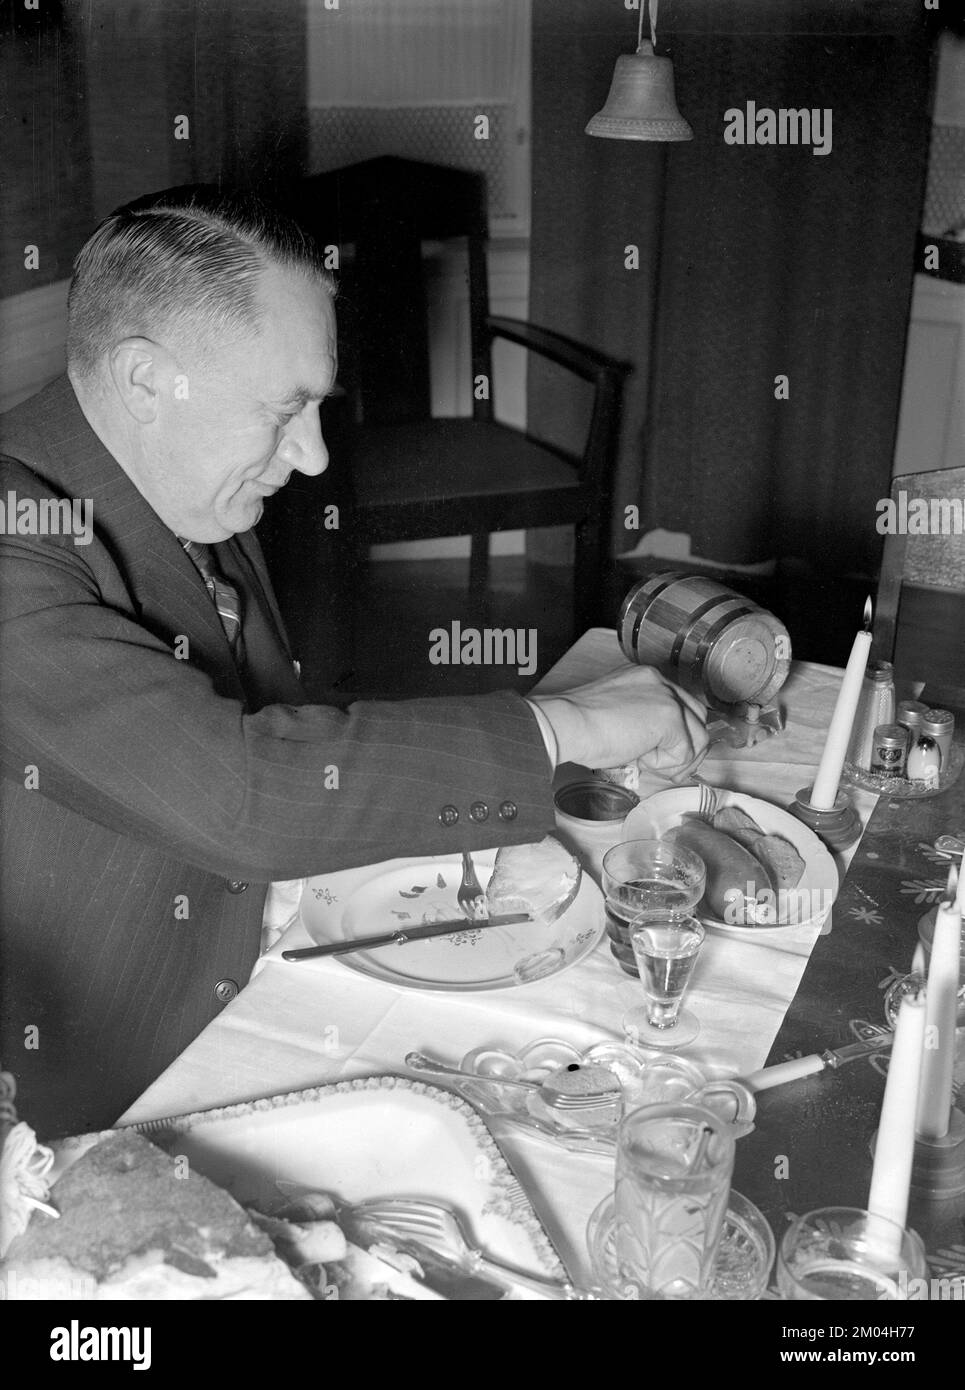 À noël en 1940s. Un homme est en train de dîner de noël et apprécie la cuisine traditionnelle typique et les boissons de la table. Suède décembre 1940 Kristoffersson 42-9 Banque D'Images